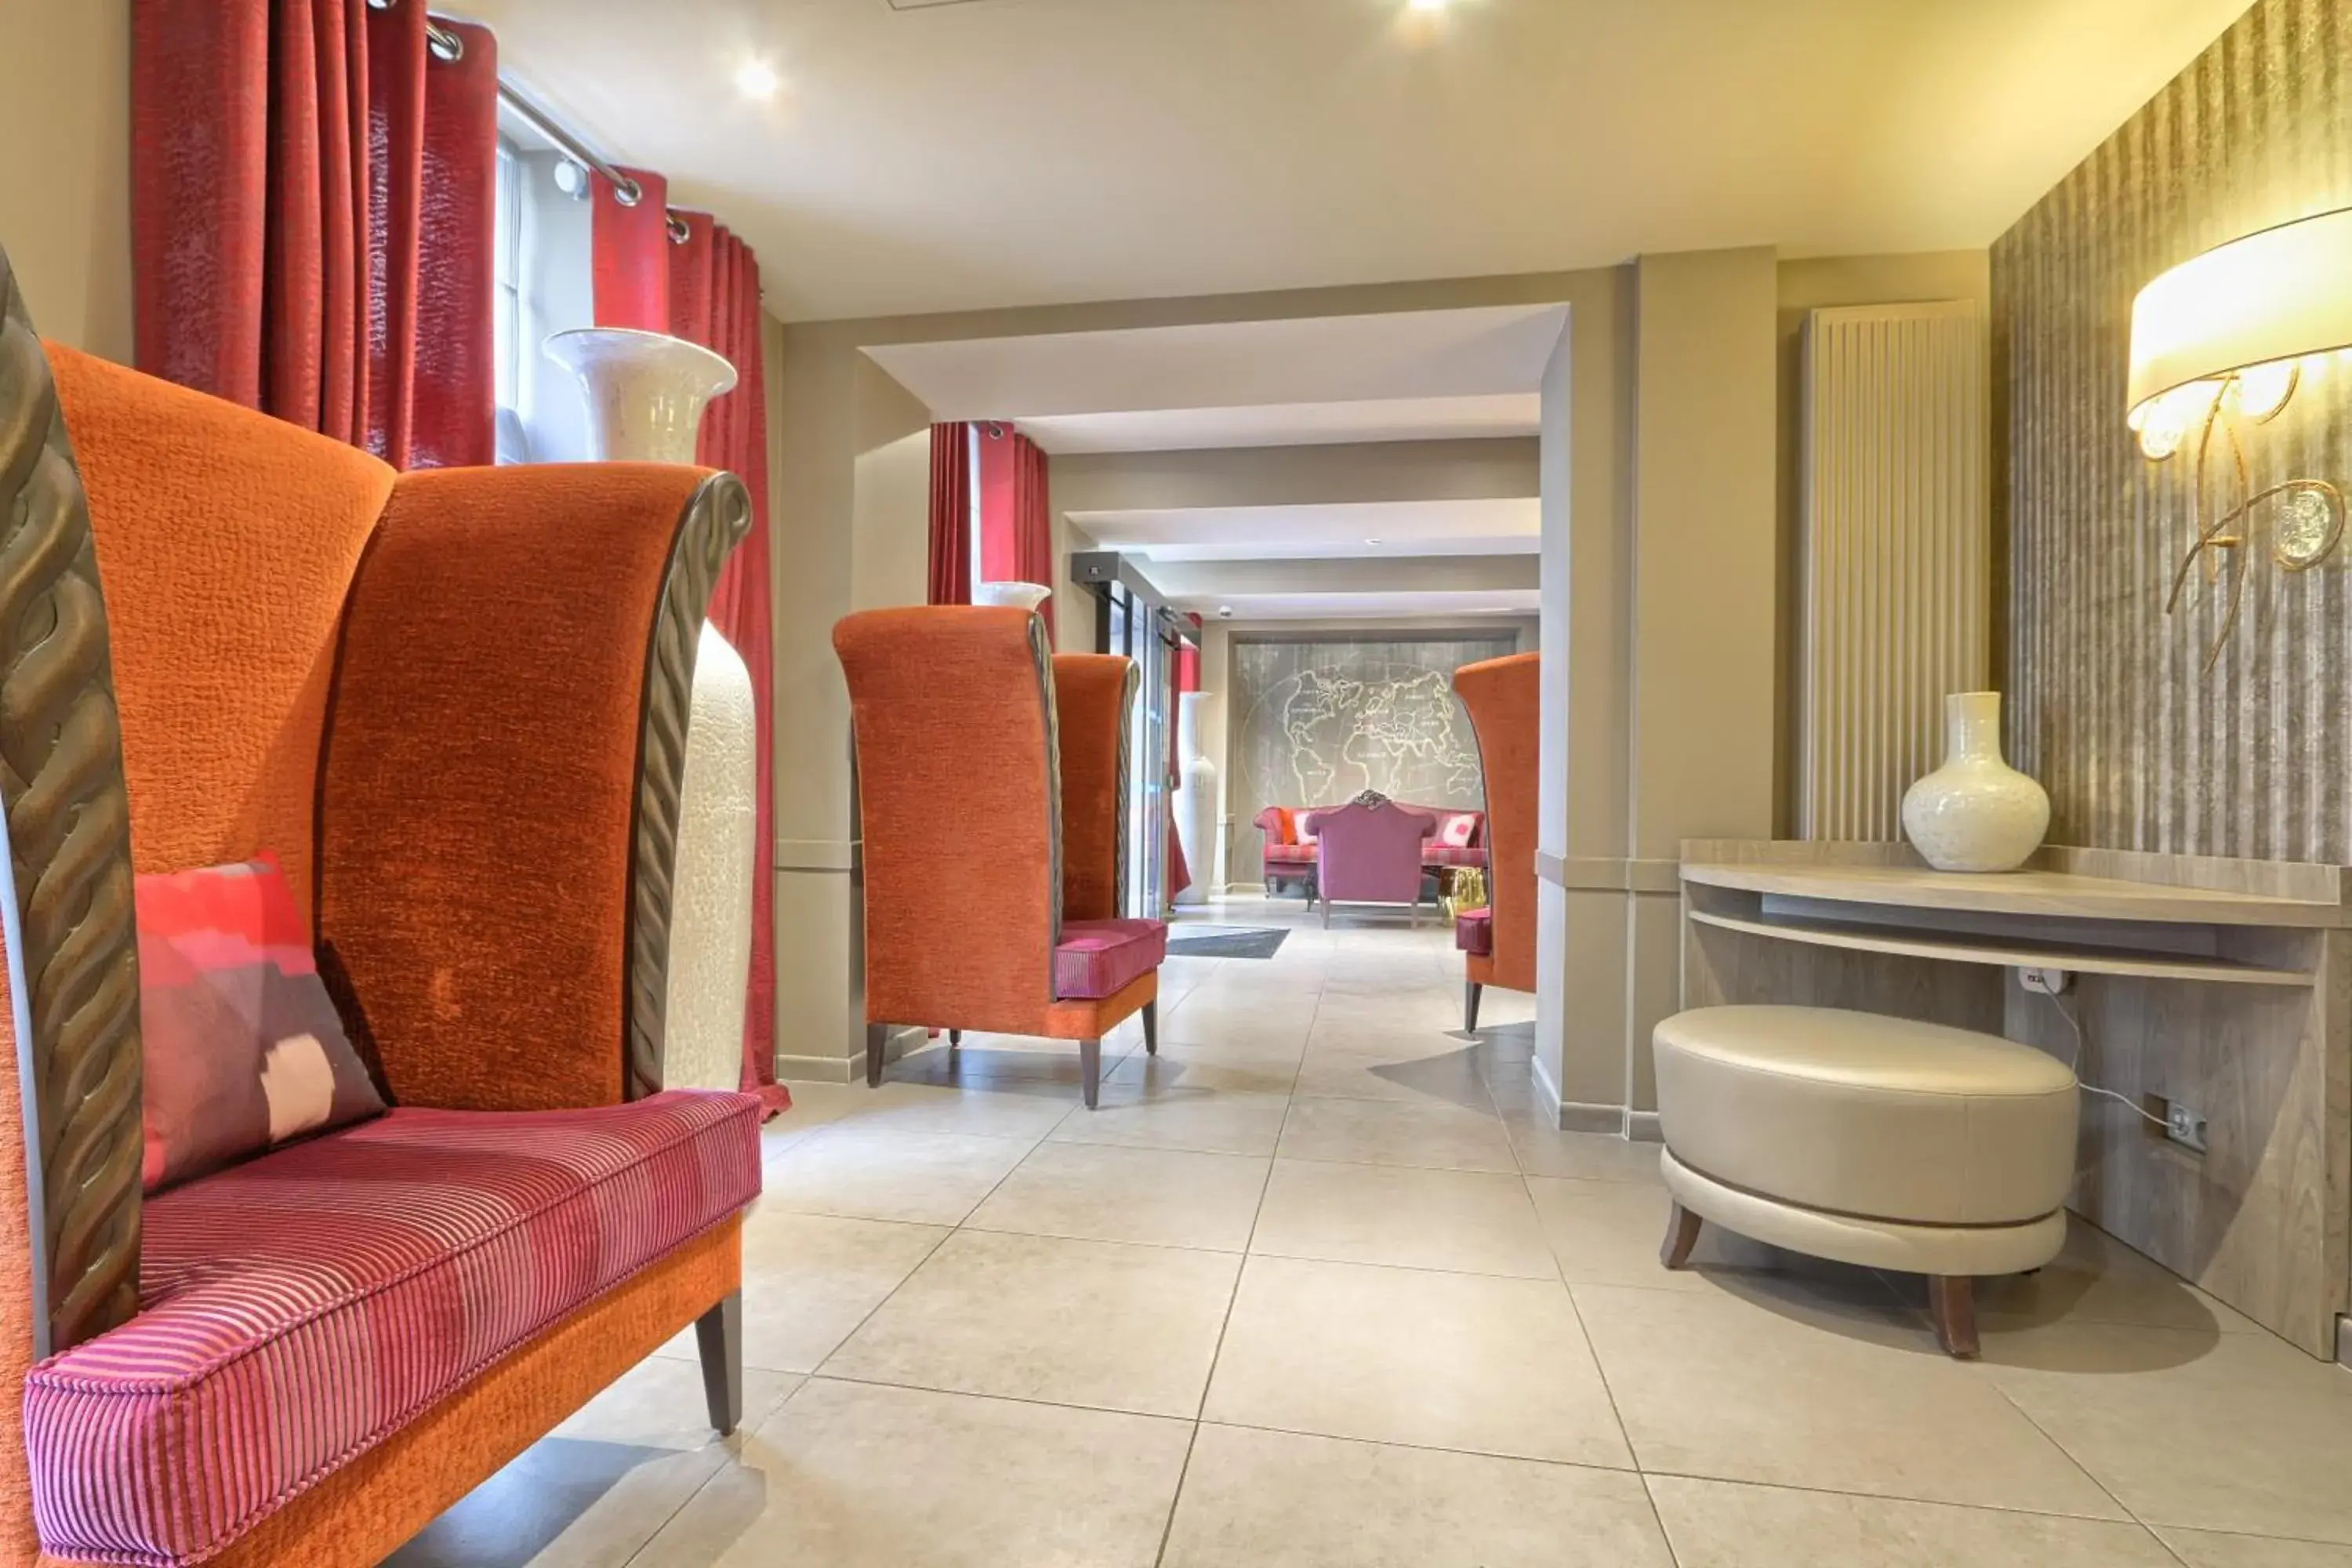 Lobby or reception, Bathroom in Hotel Mondial